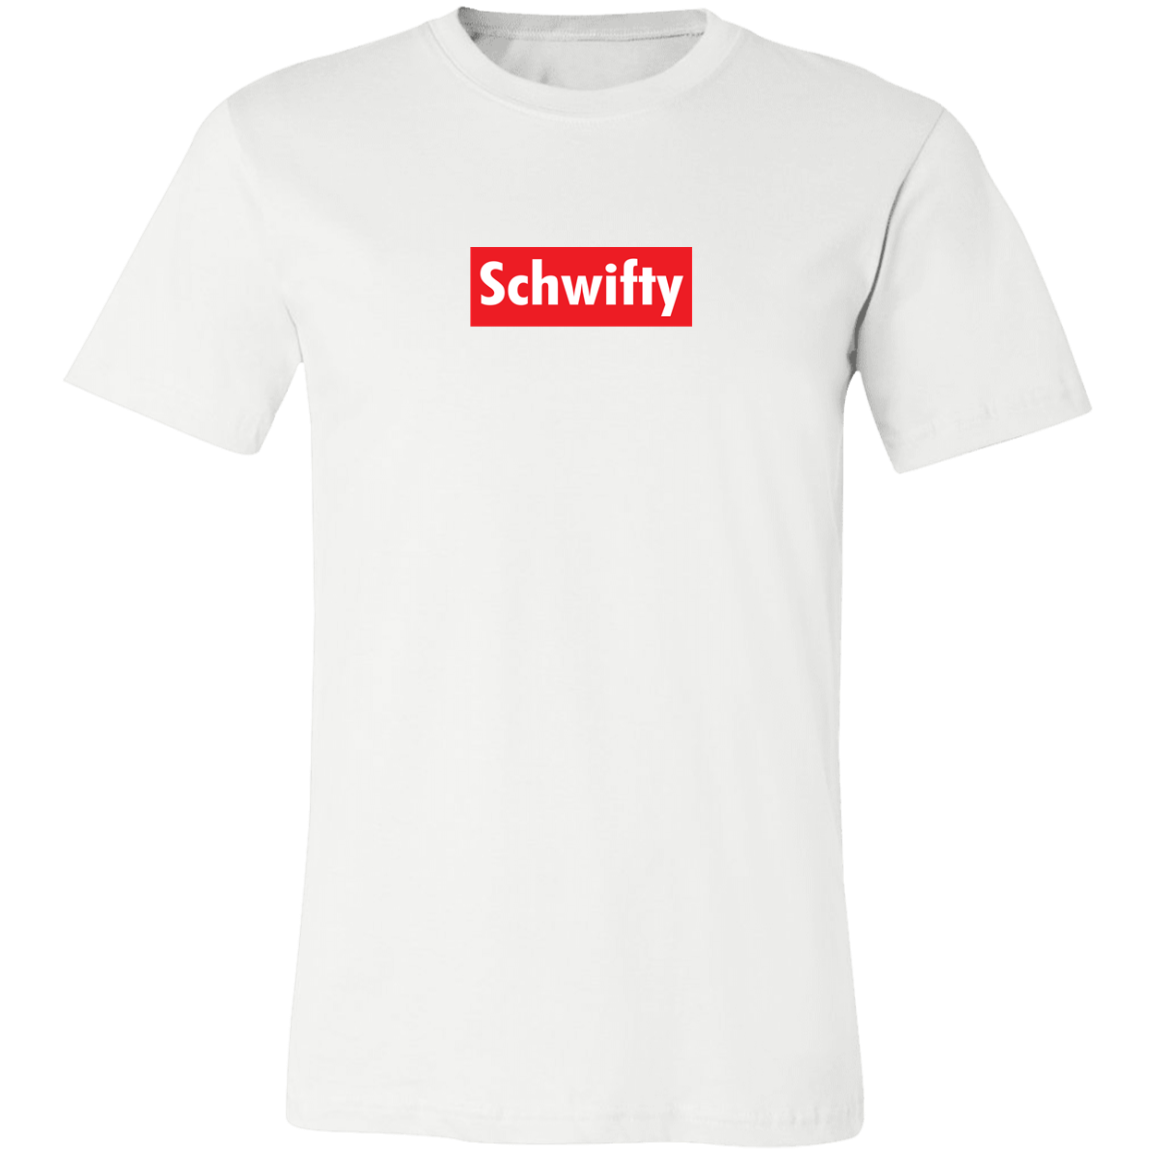 Schwifty T-shirt